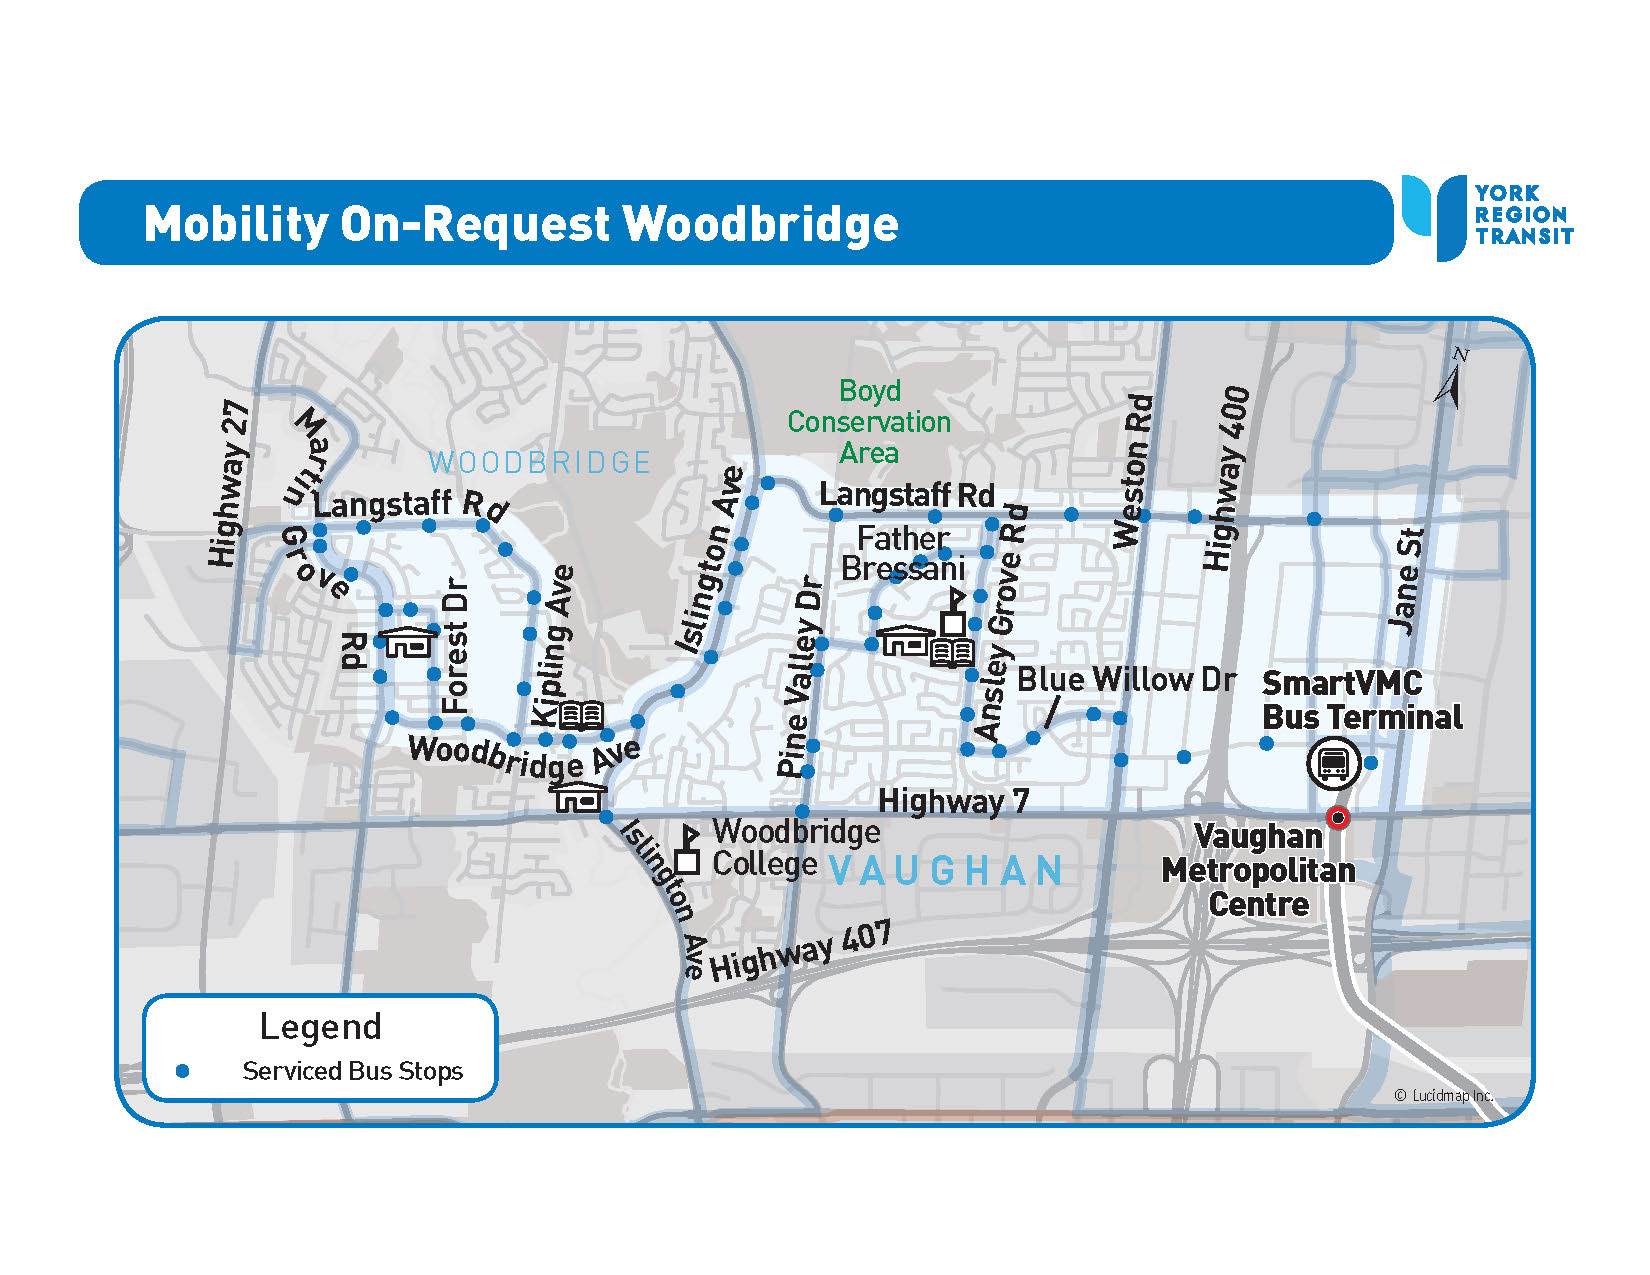 MOR Woodbridge Service Area Map